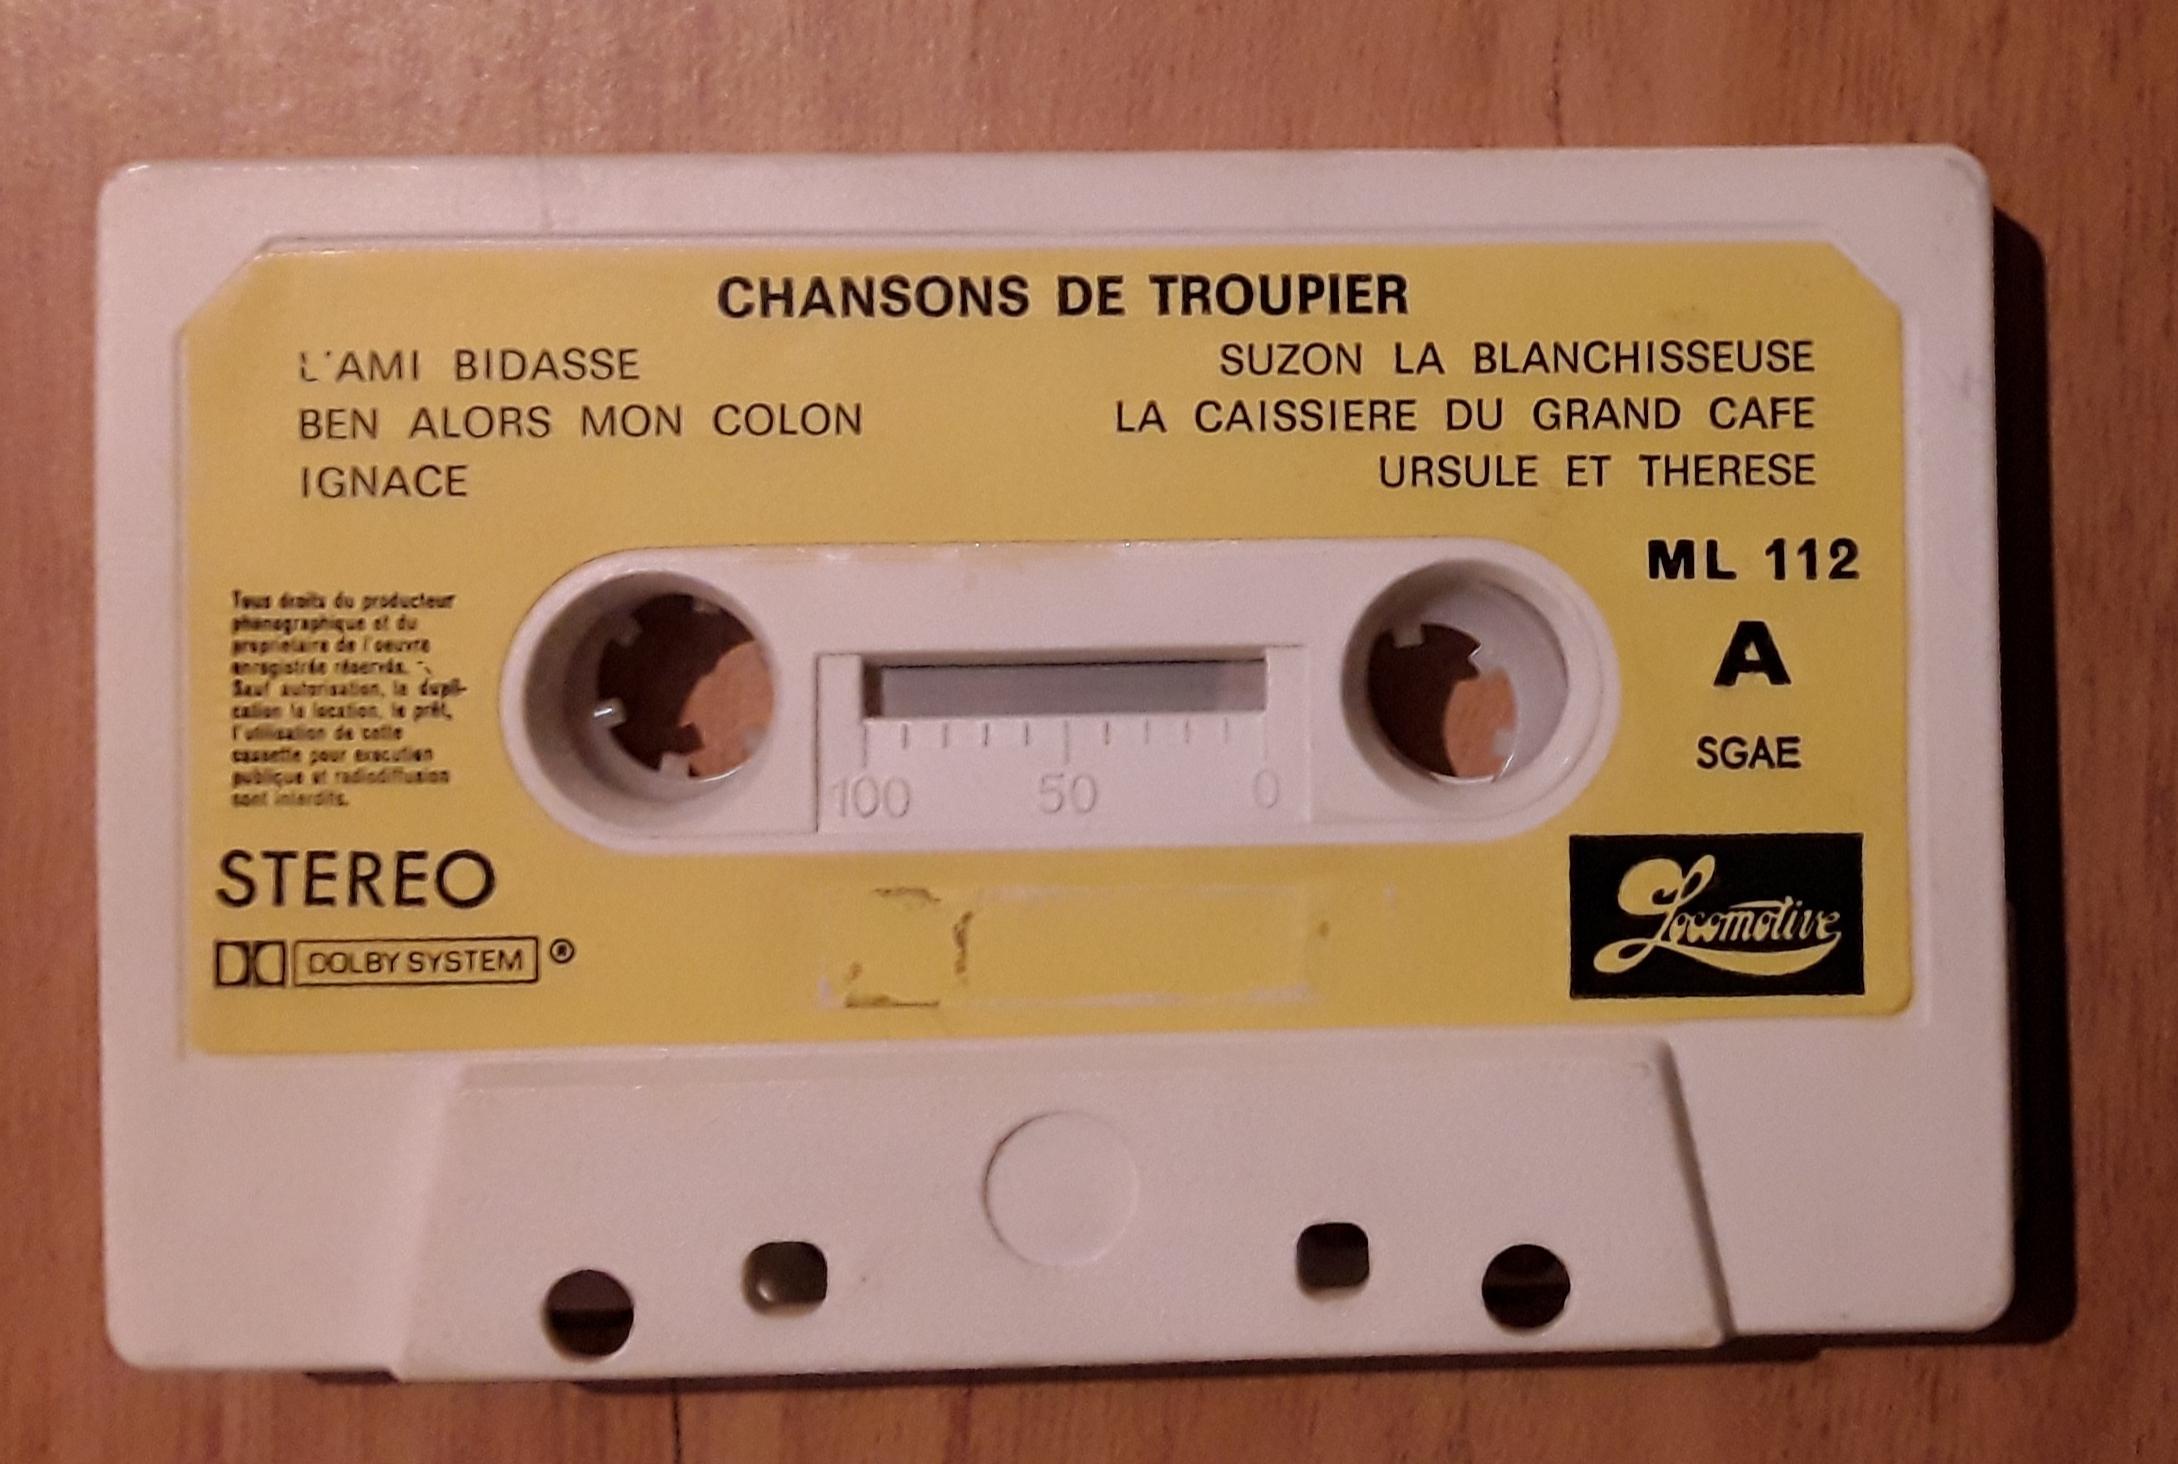 troc de troc cassette audio : chansons de troupier image 0